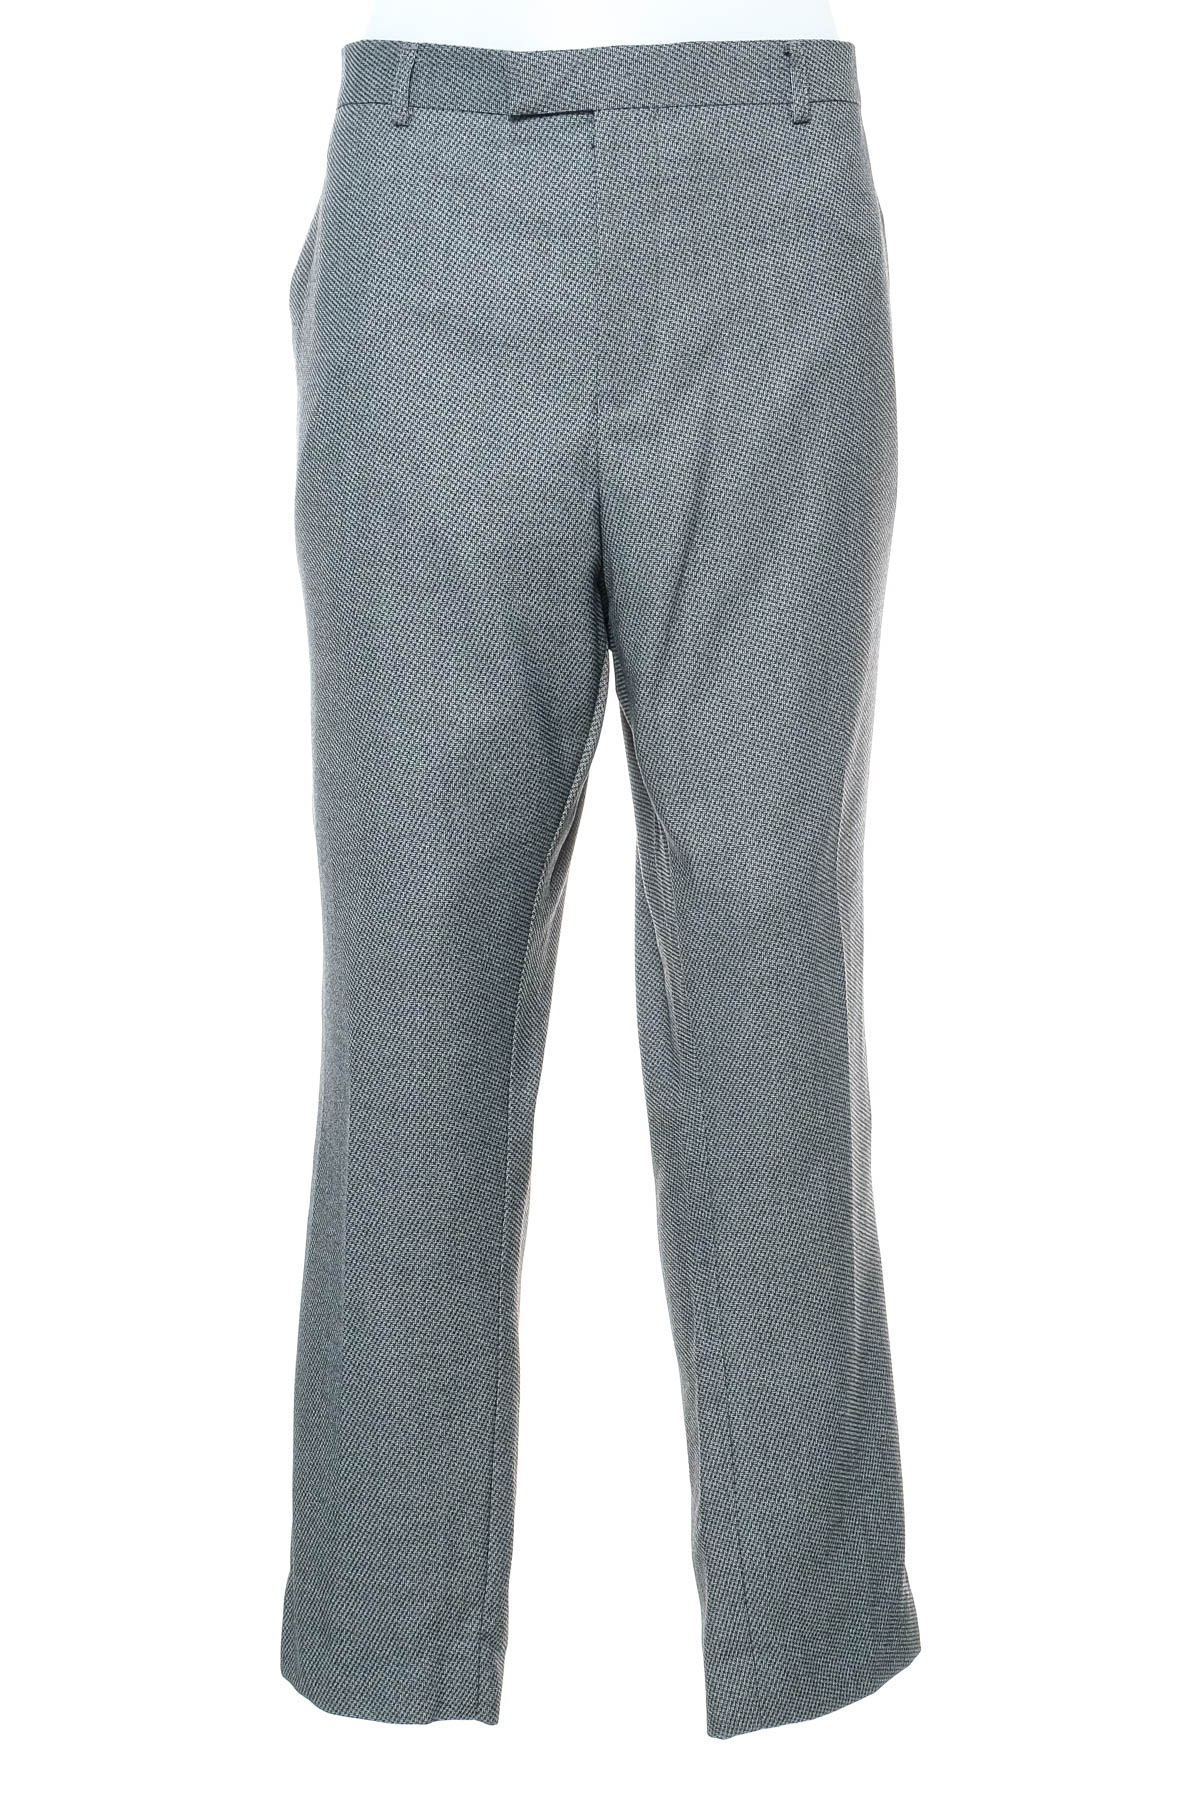 Pantalon pentru bărbați - HARRY BROWN - 0